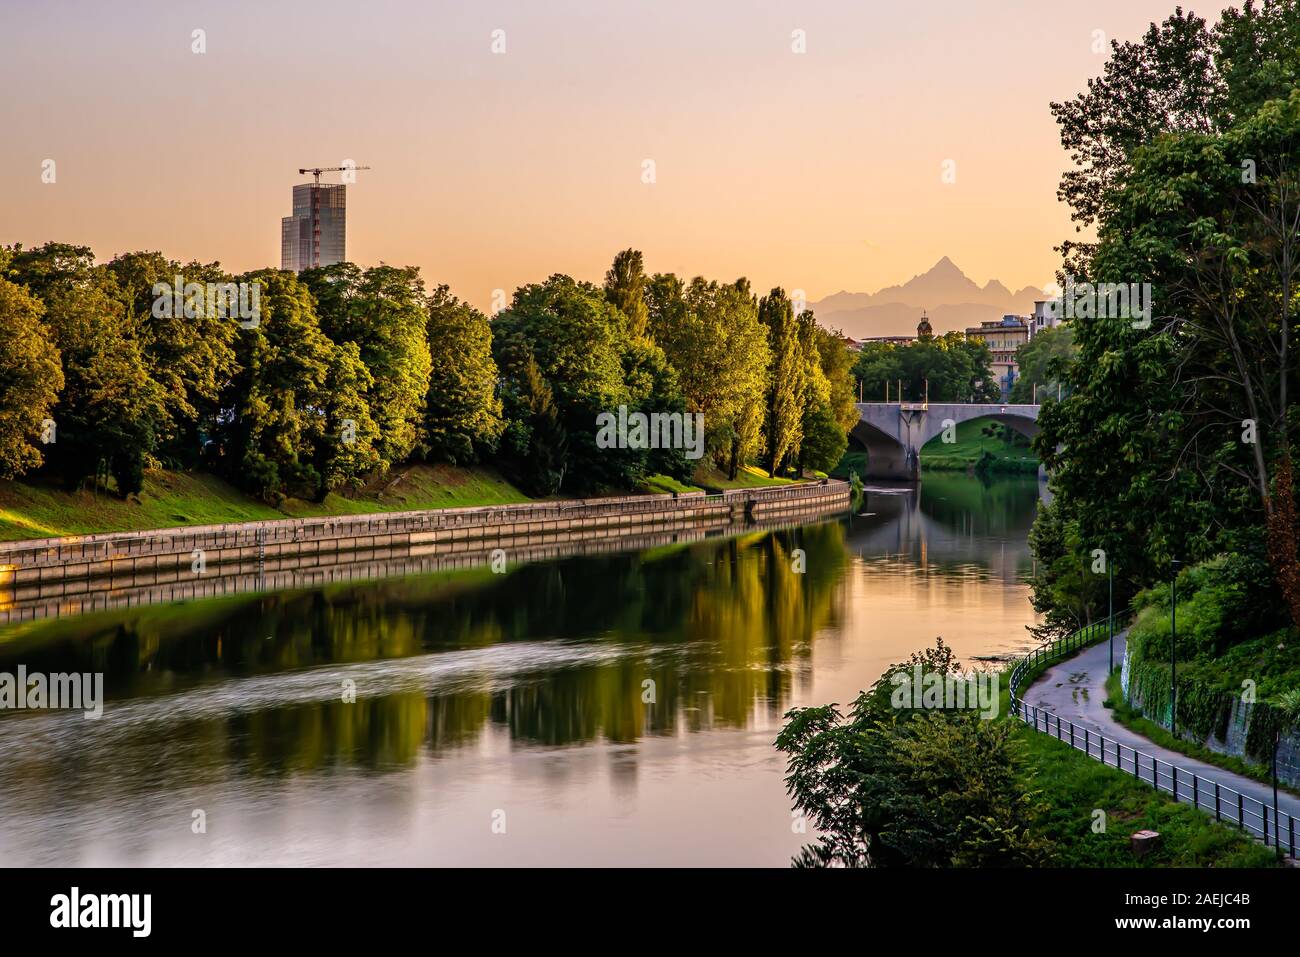 Torino di notte. La prima capitale del regno d'Italia mostra le sue bellezze, le sue storiche piazze e tramonti sul fiume Po Foto Stock